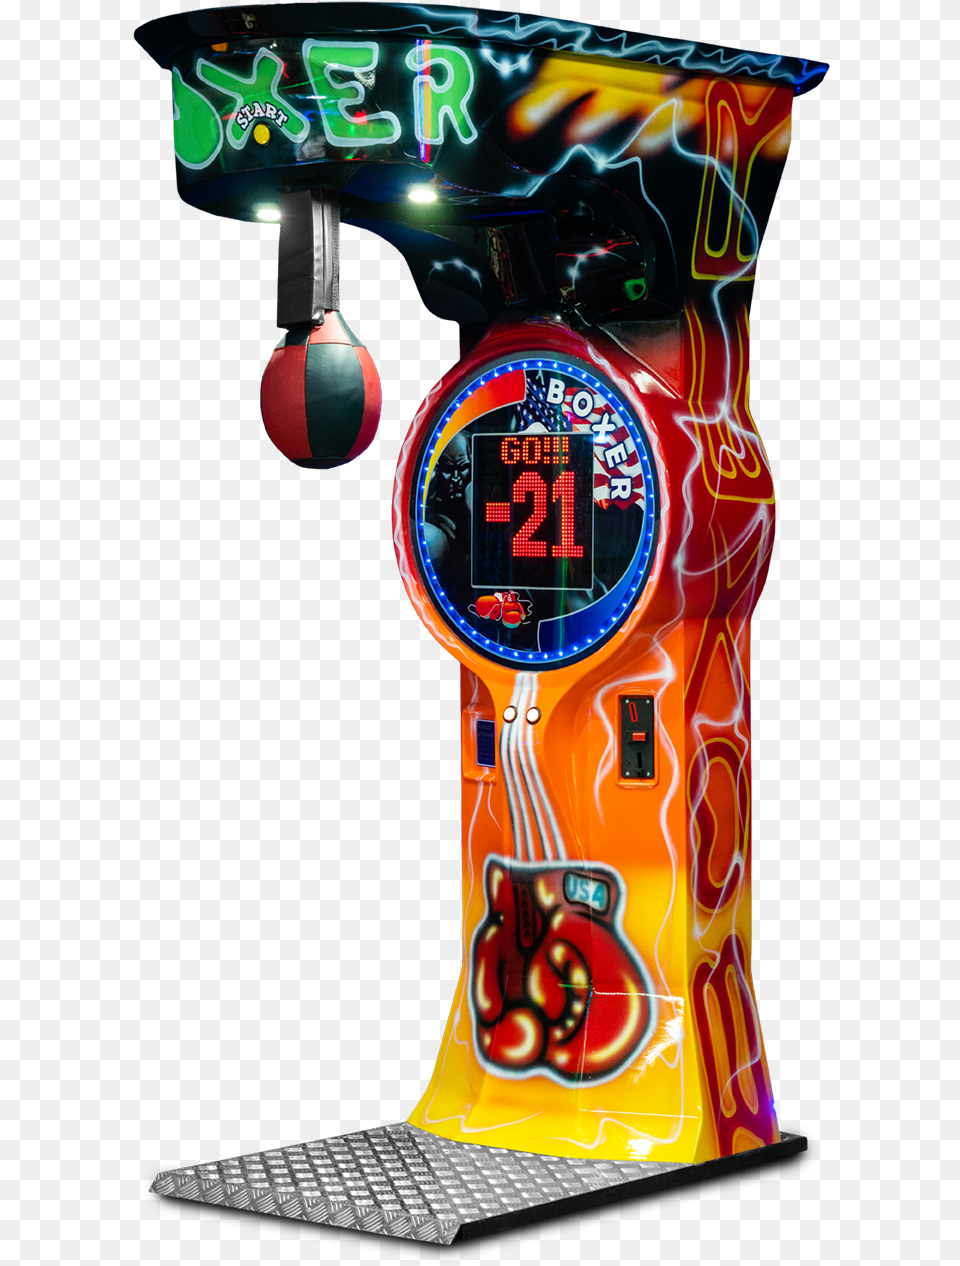 Boxer 2 Cartoon, Arcade Game Machine, Game Png Image